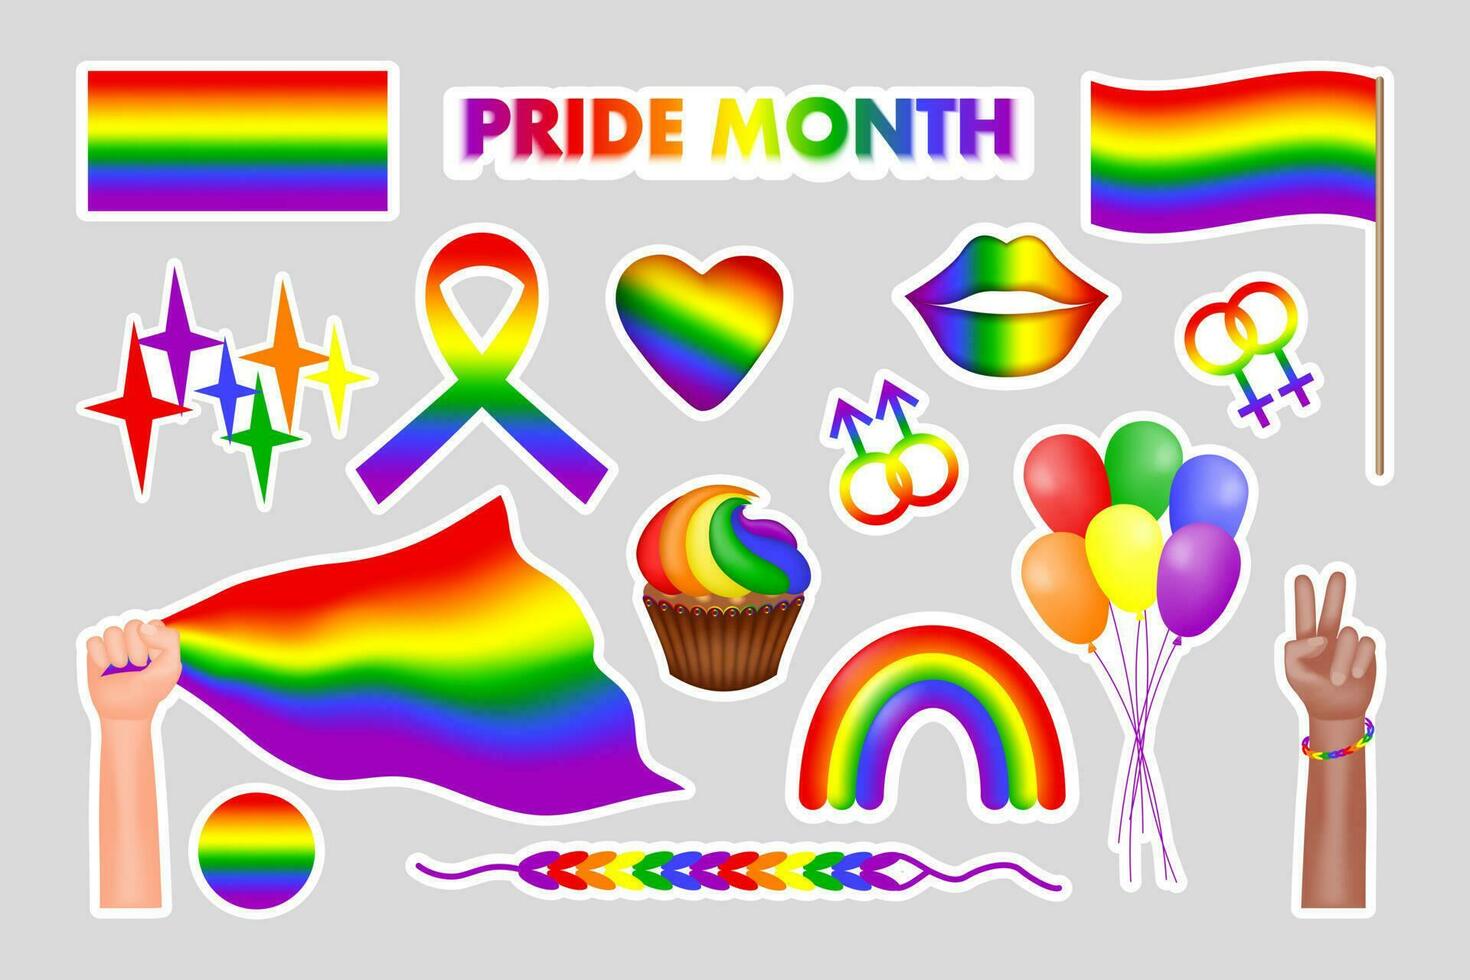 vector conjunto de pegatinas símbolos de el lgbtq comunidad. orgullo mes iconos arcoíris, manos de personas con lgbt bandera, globos, arco iris labios, corazón. vector ilustración.